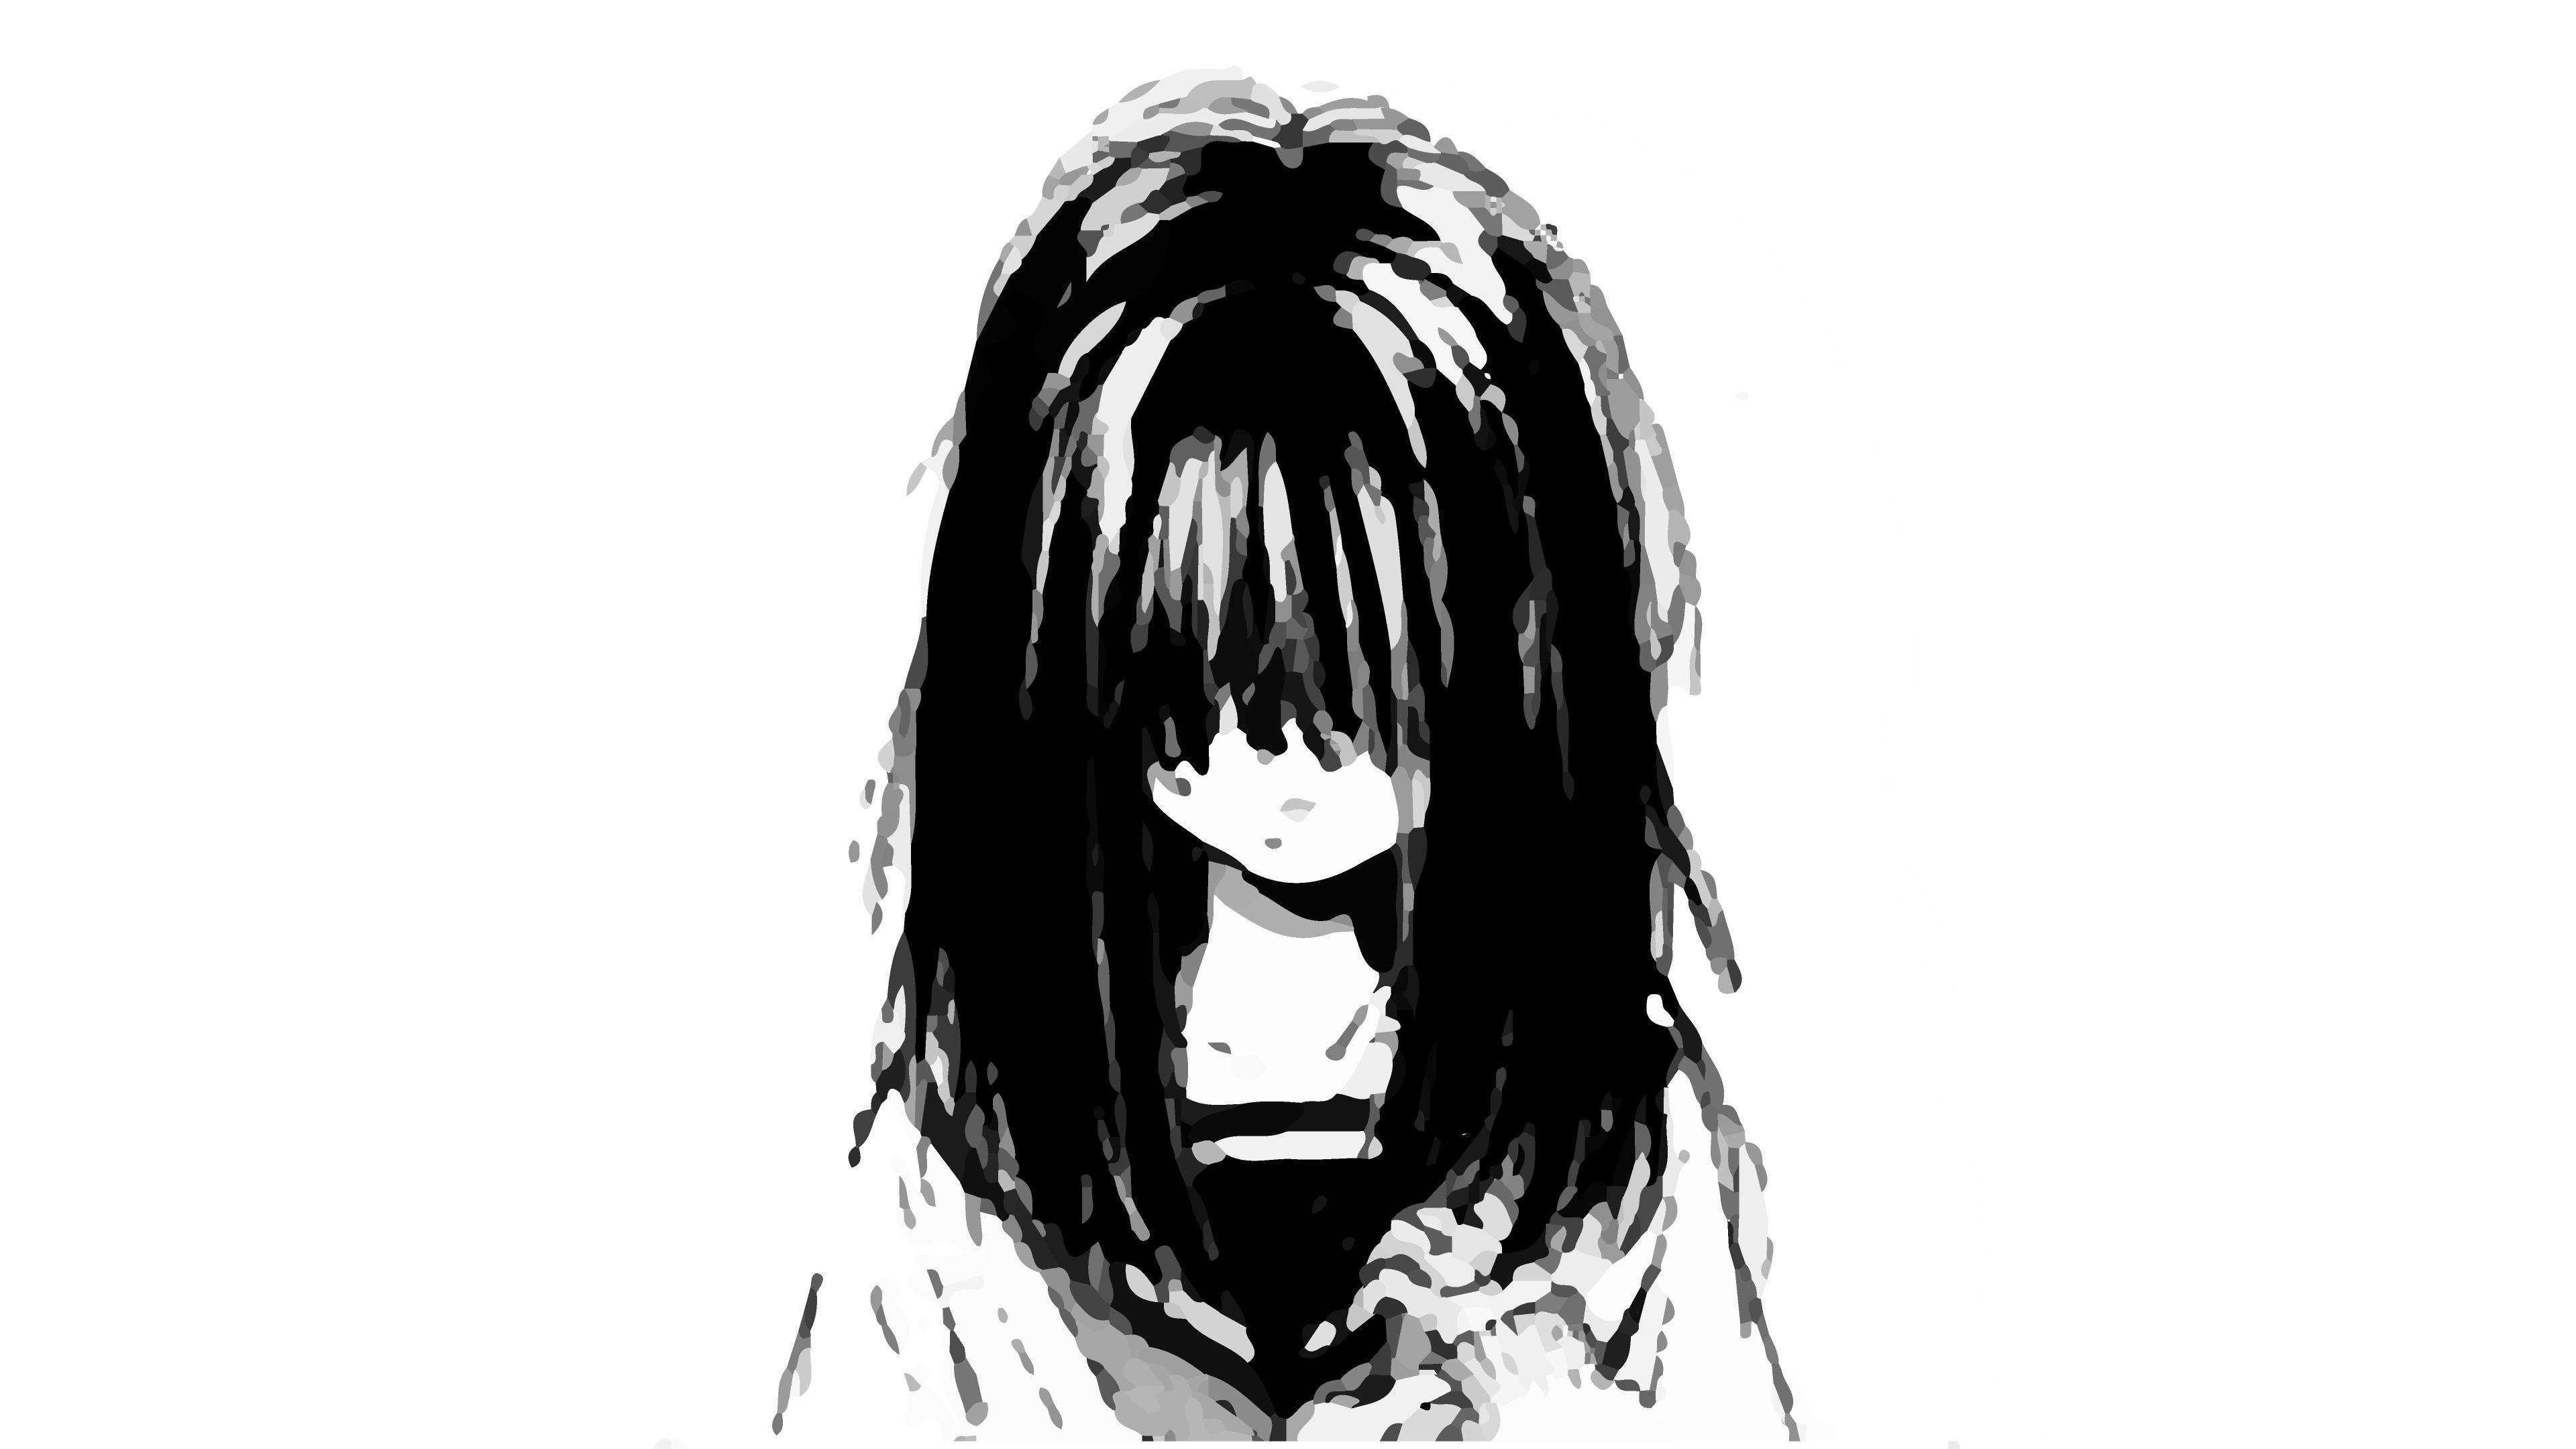 Sad Anime Girl Black and White Wallpapers - Top Free Sad Anime Girl Black  and White Backgrounds - WallpaperAccess